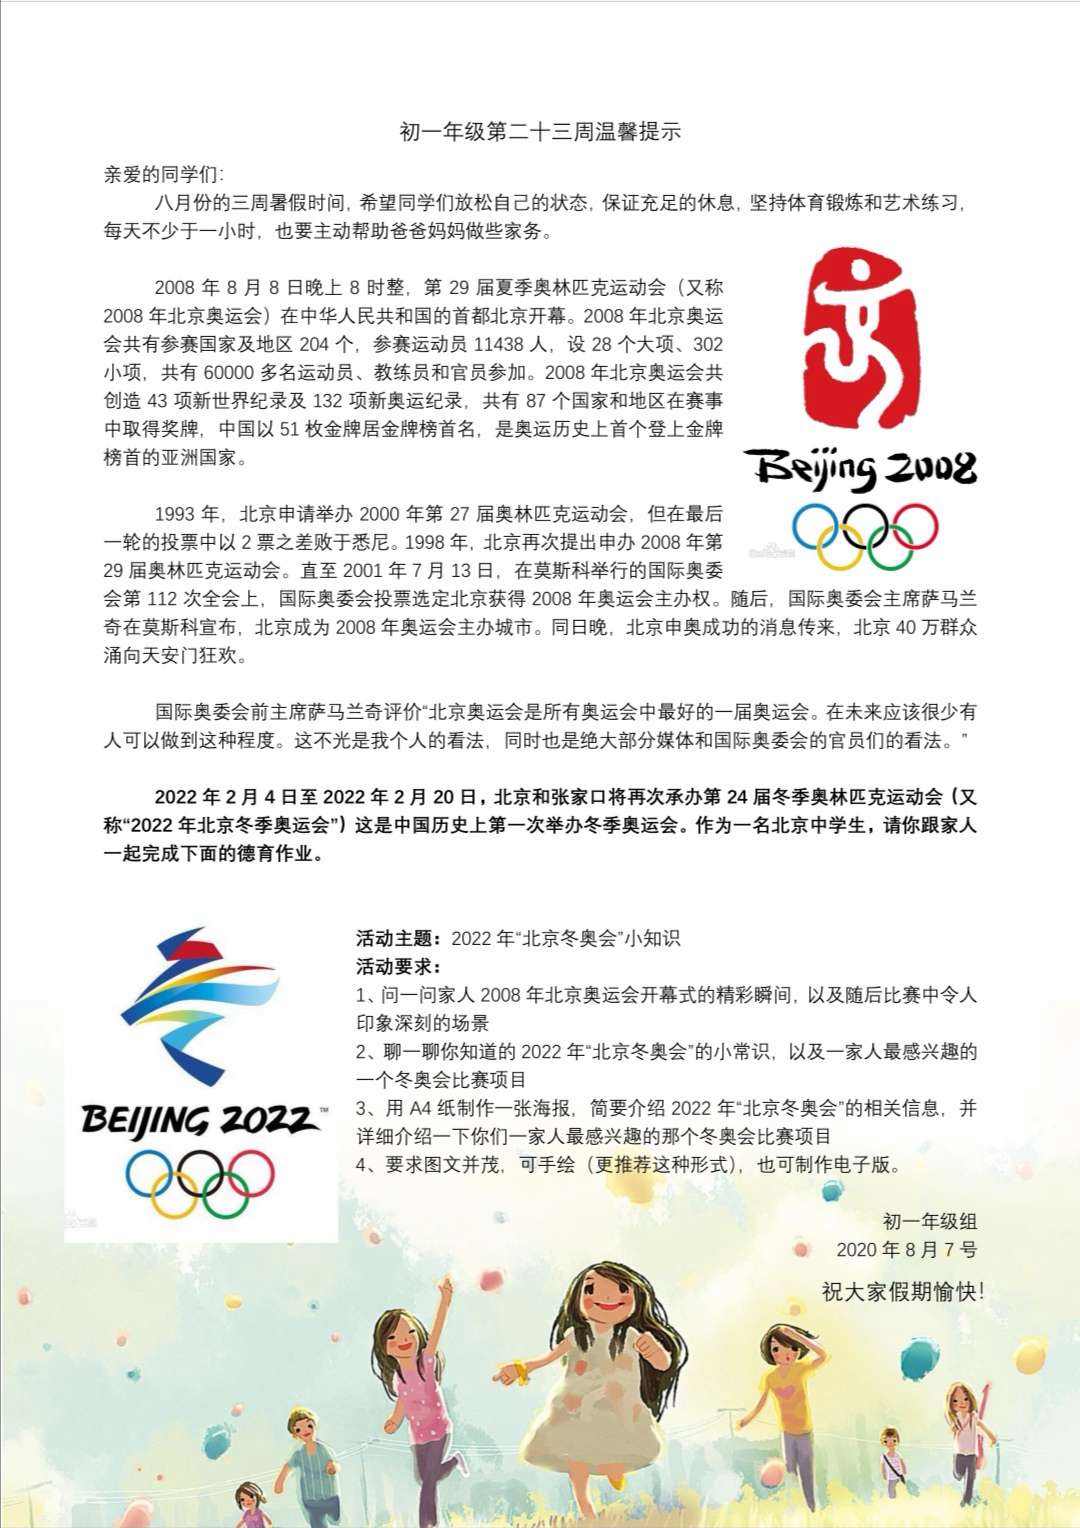 [关于2022年冬奥会的小知识]关于2022年冬奥会的小知识,给奥运会加油的小报